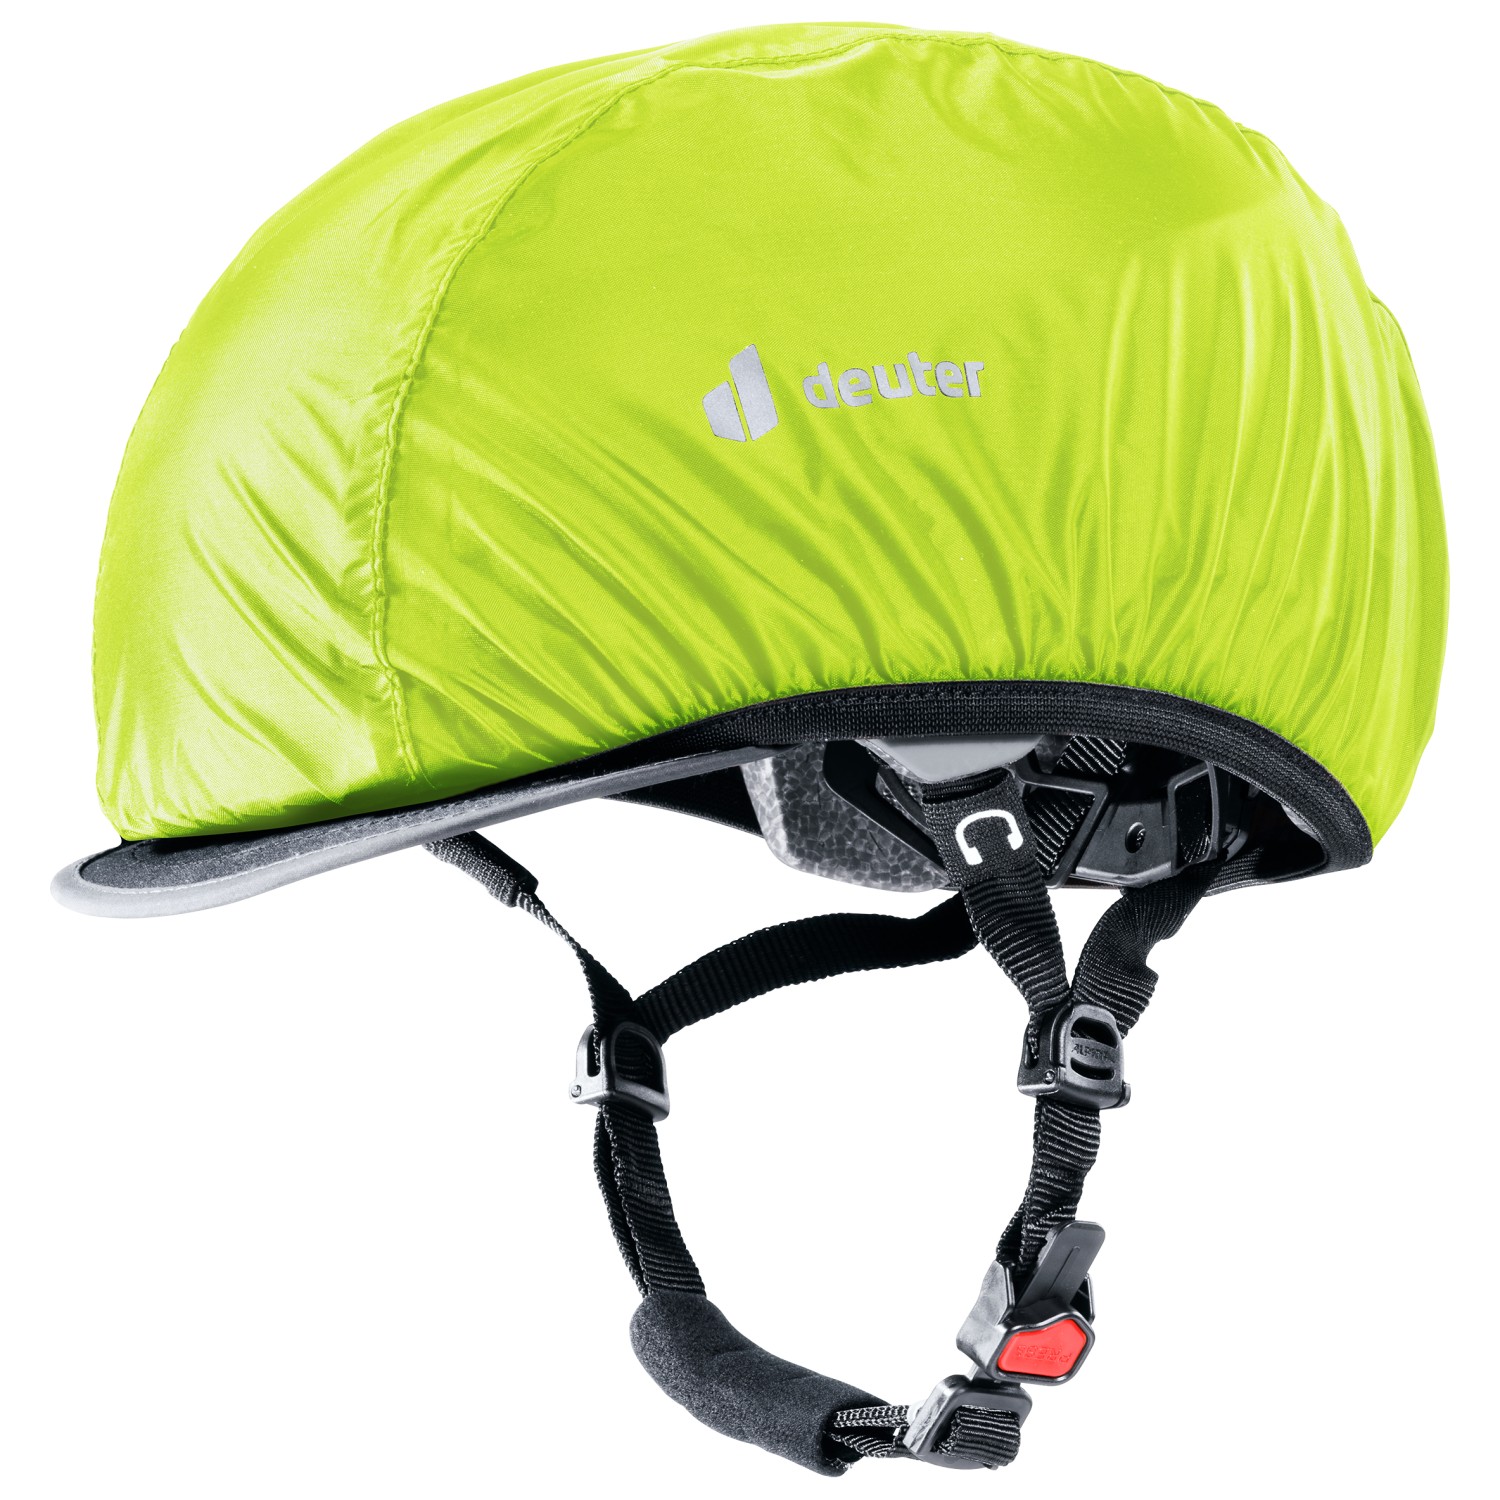 Велосипедный шлем Deuter Helmet Cover, цвет Neon